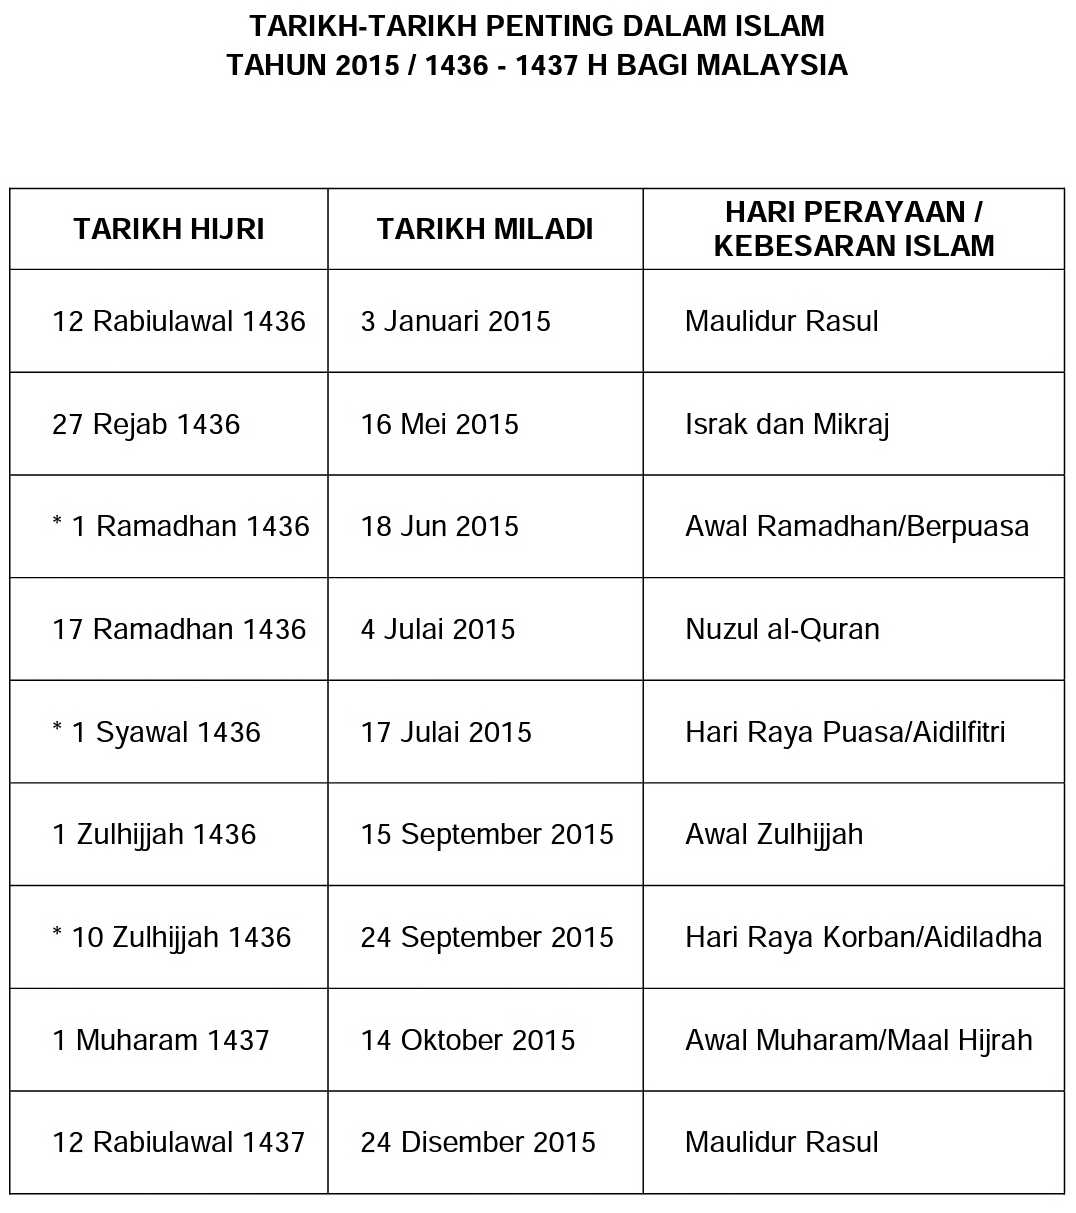 Tarikh-Tarikh Penting Dalam Kalender Islam 1436-1437H